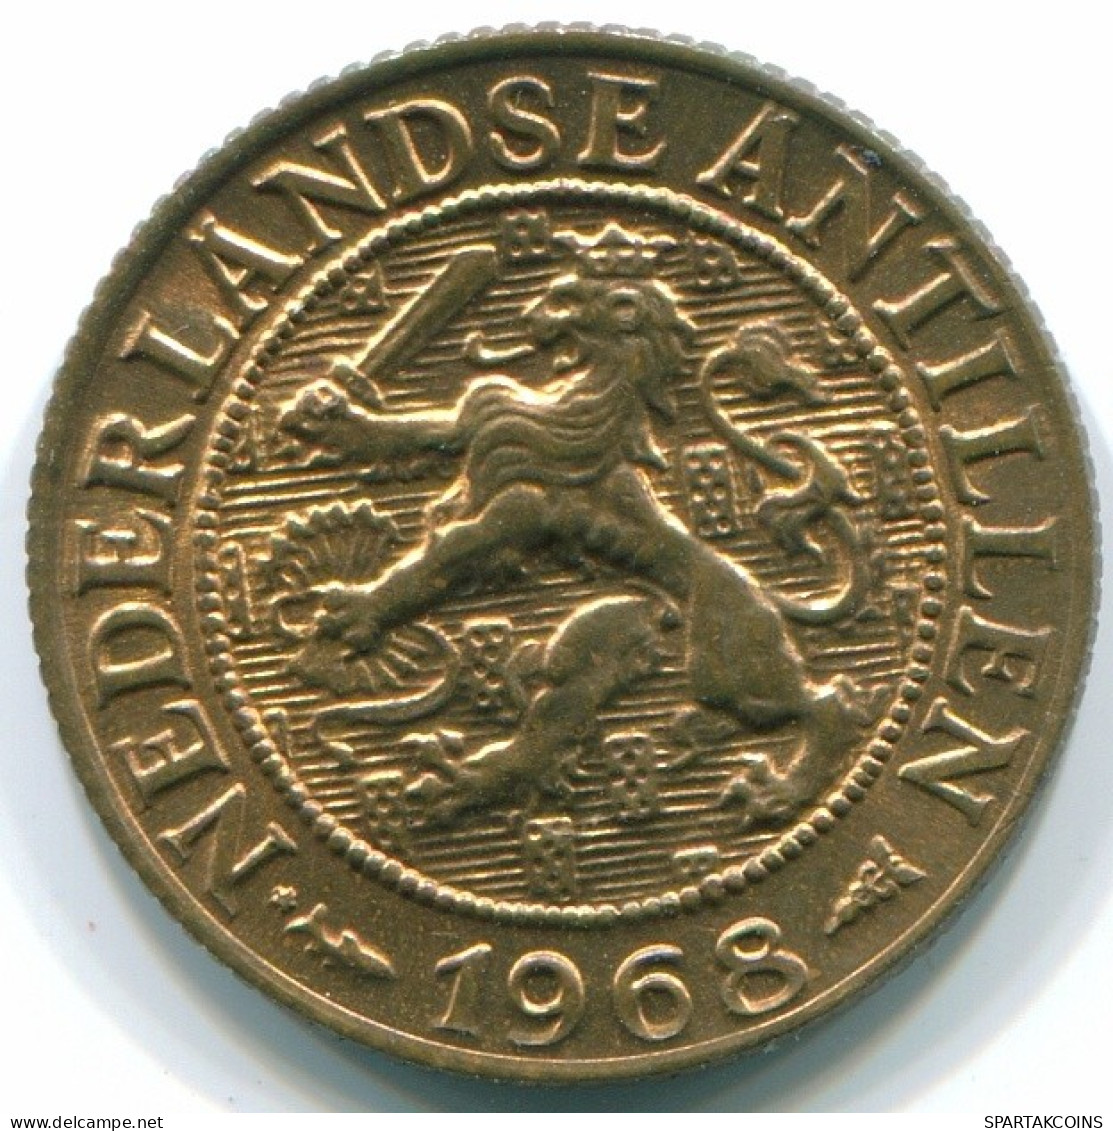 1 CENT 1968 NETHERLANDS ANTILLES Bronze Fish Colonial Coin #S10786.U.A - Antilles Néerlandaises